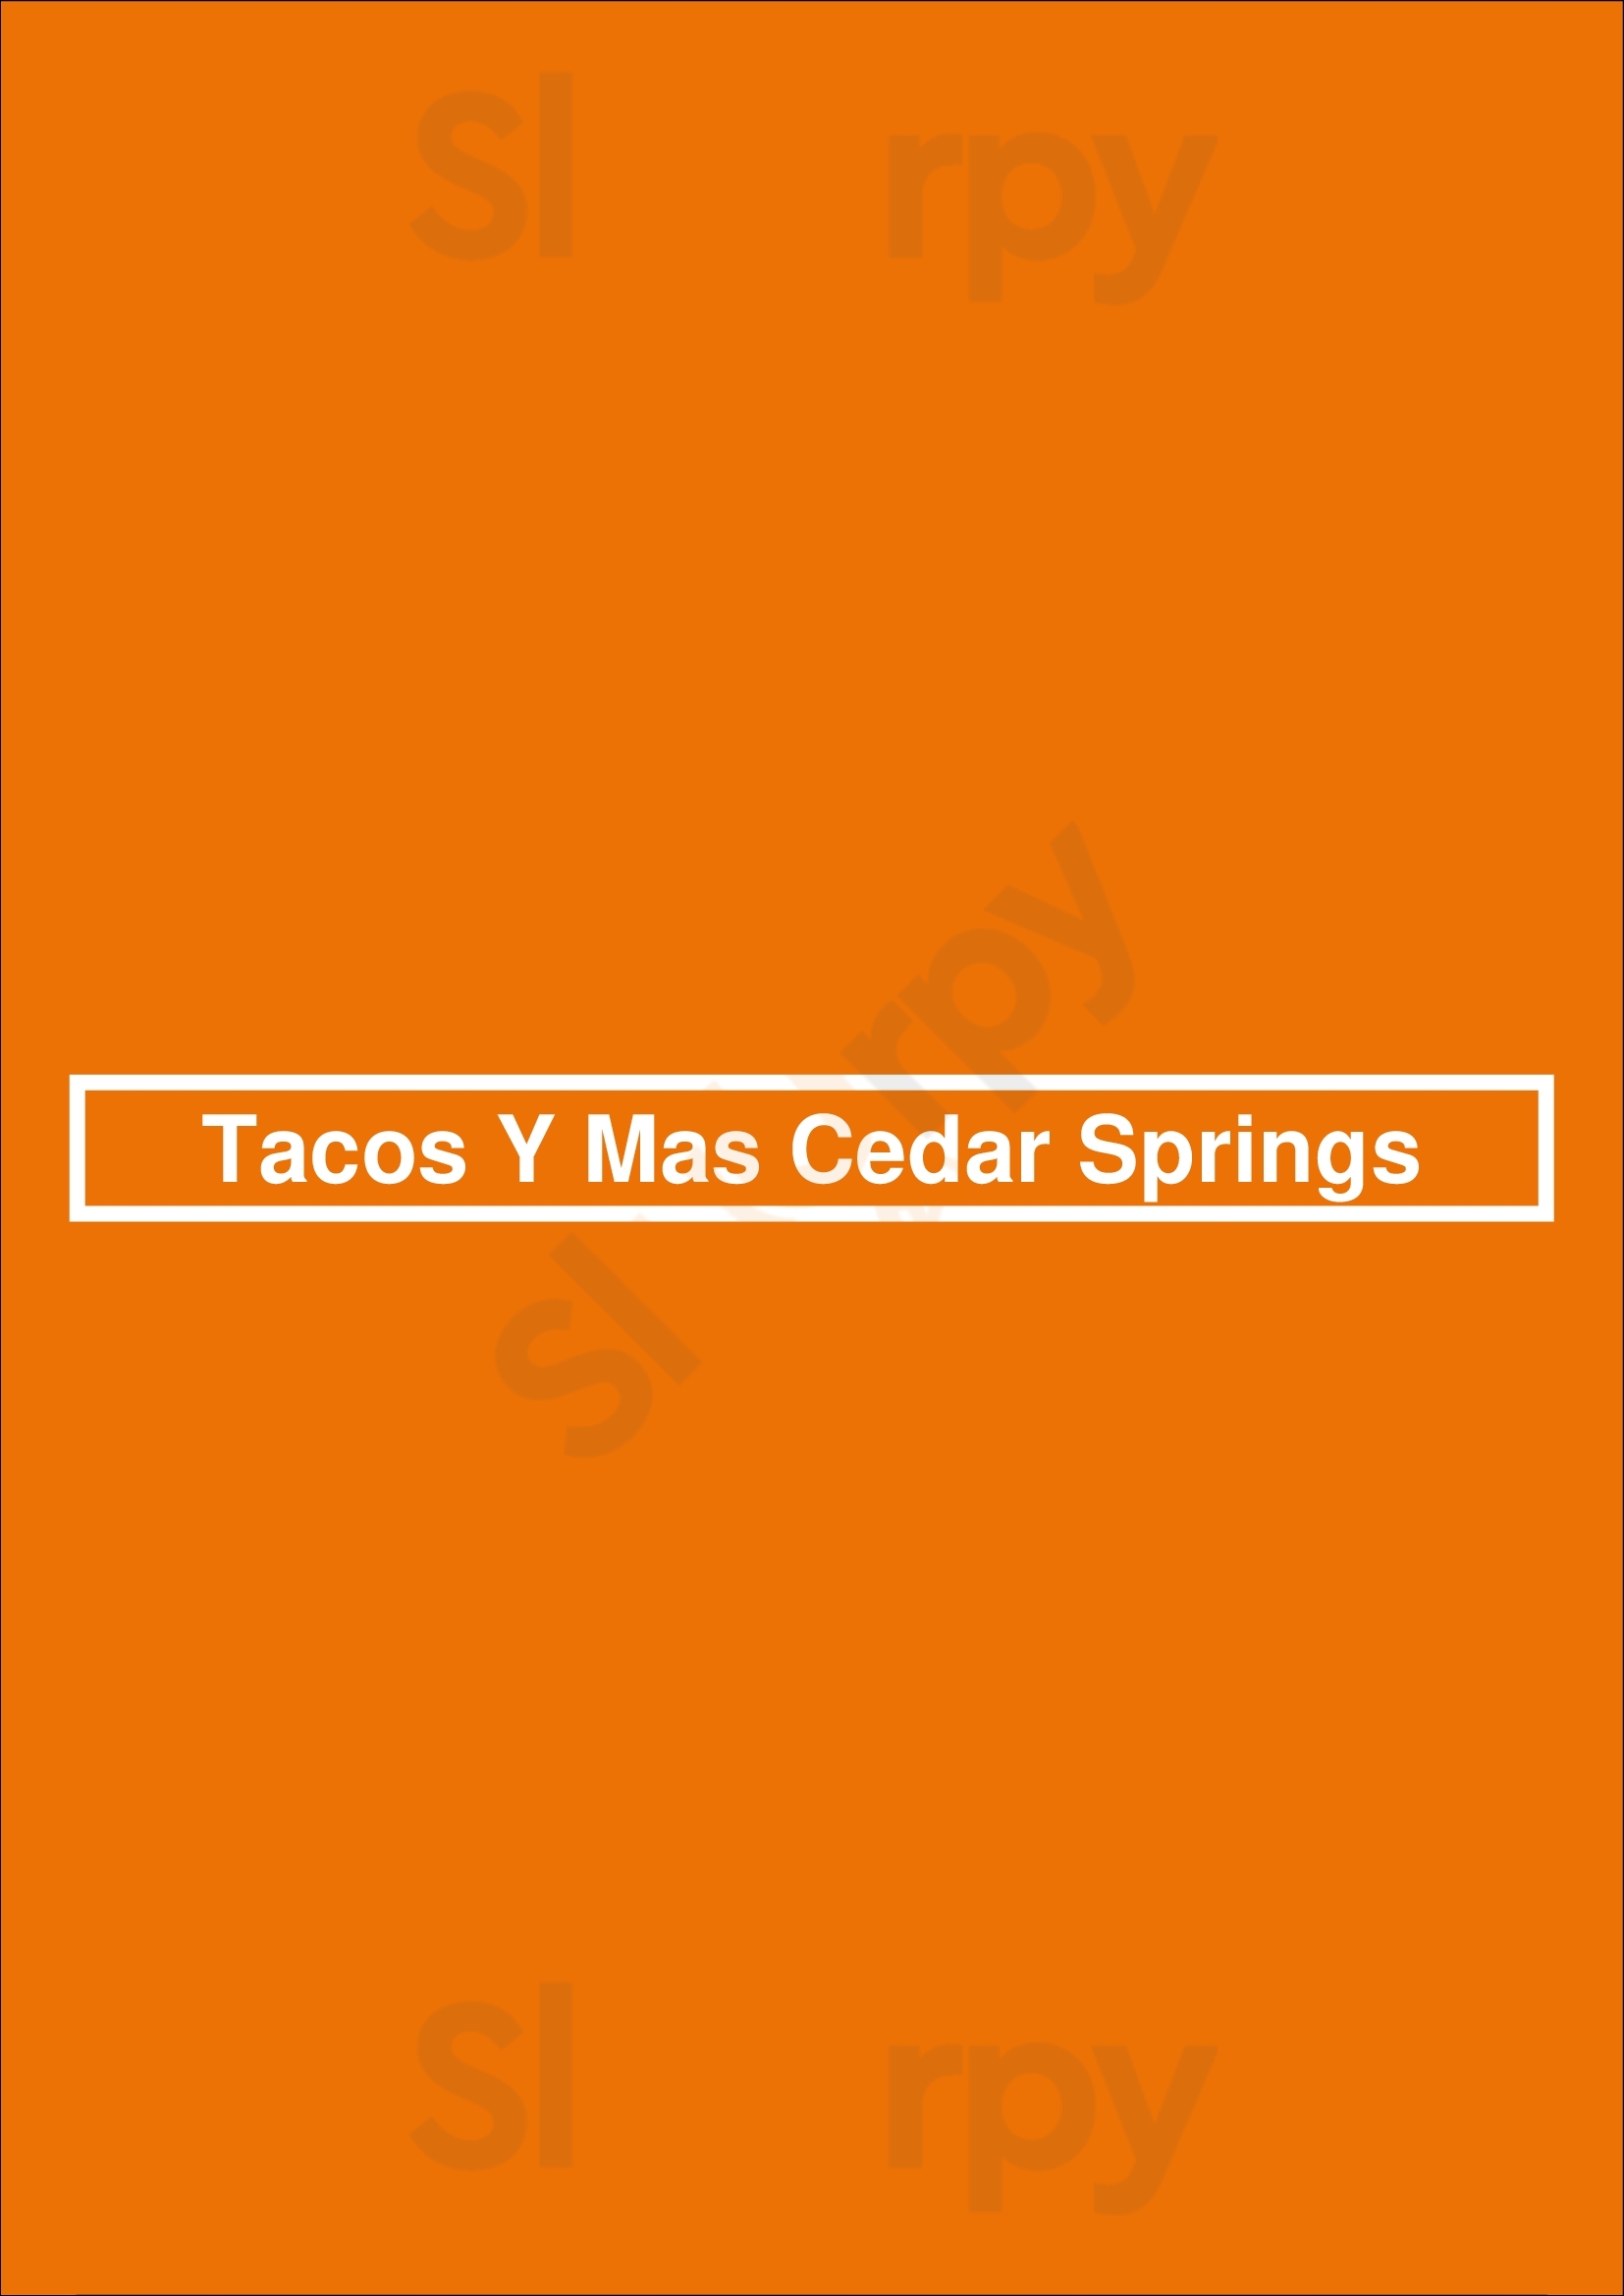 Tacos Y Mas - Oak Lawn Dallas Menu - 1